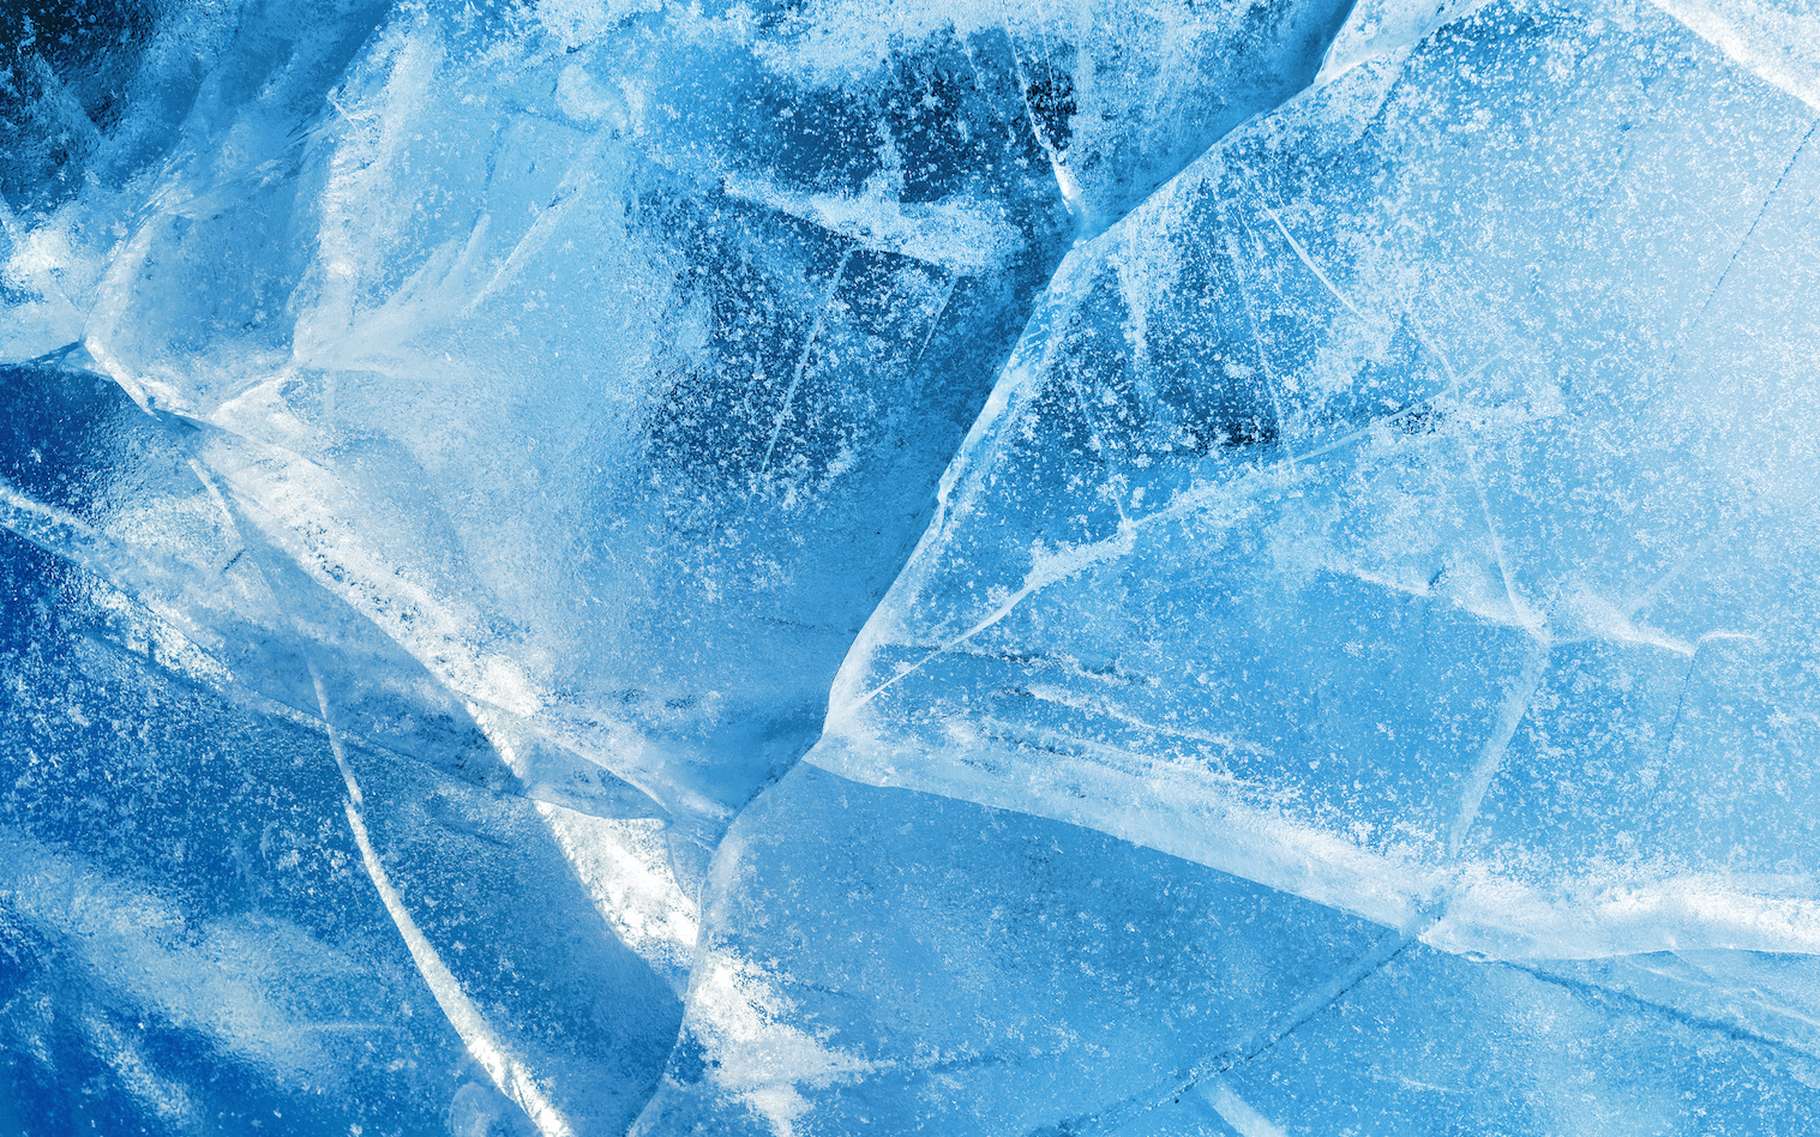 Des physiciens créent une nouvelle forme de glace, proche de l'eau liquide